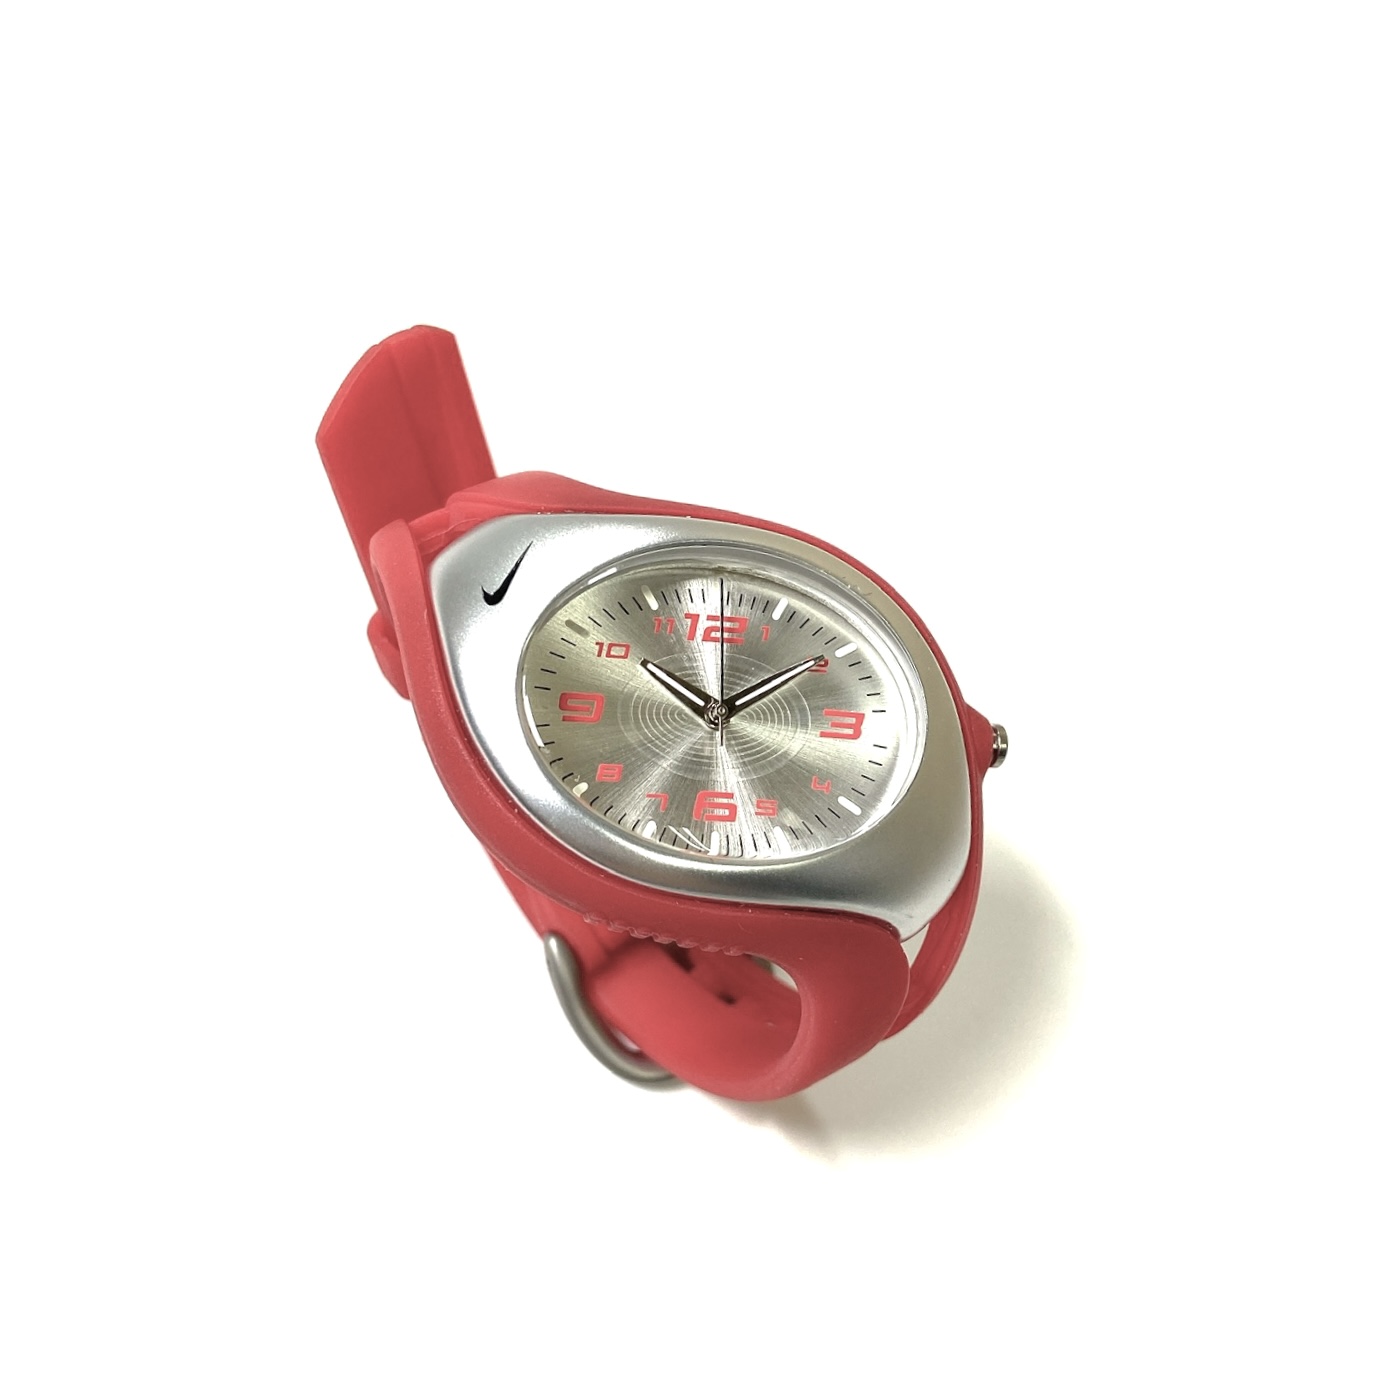 ナイキ腕時計 - 腕時計(デジタル)